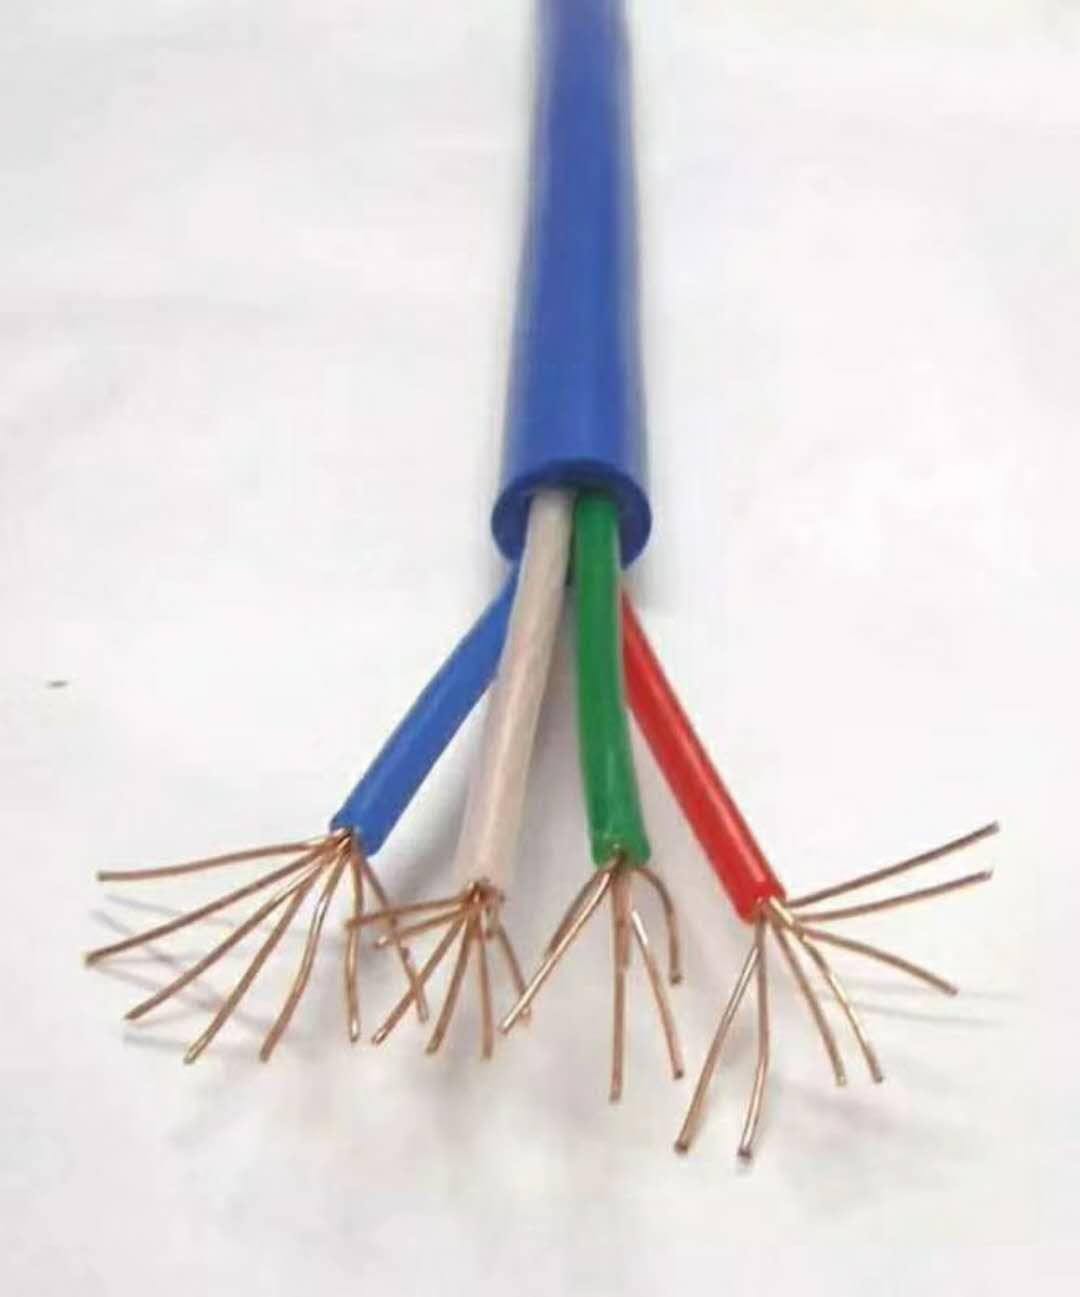 耐高温控制电缆 ZR-KFFRP22 5X16 高温控制电缆 高温计算机电缆